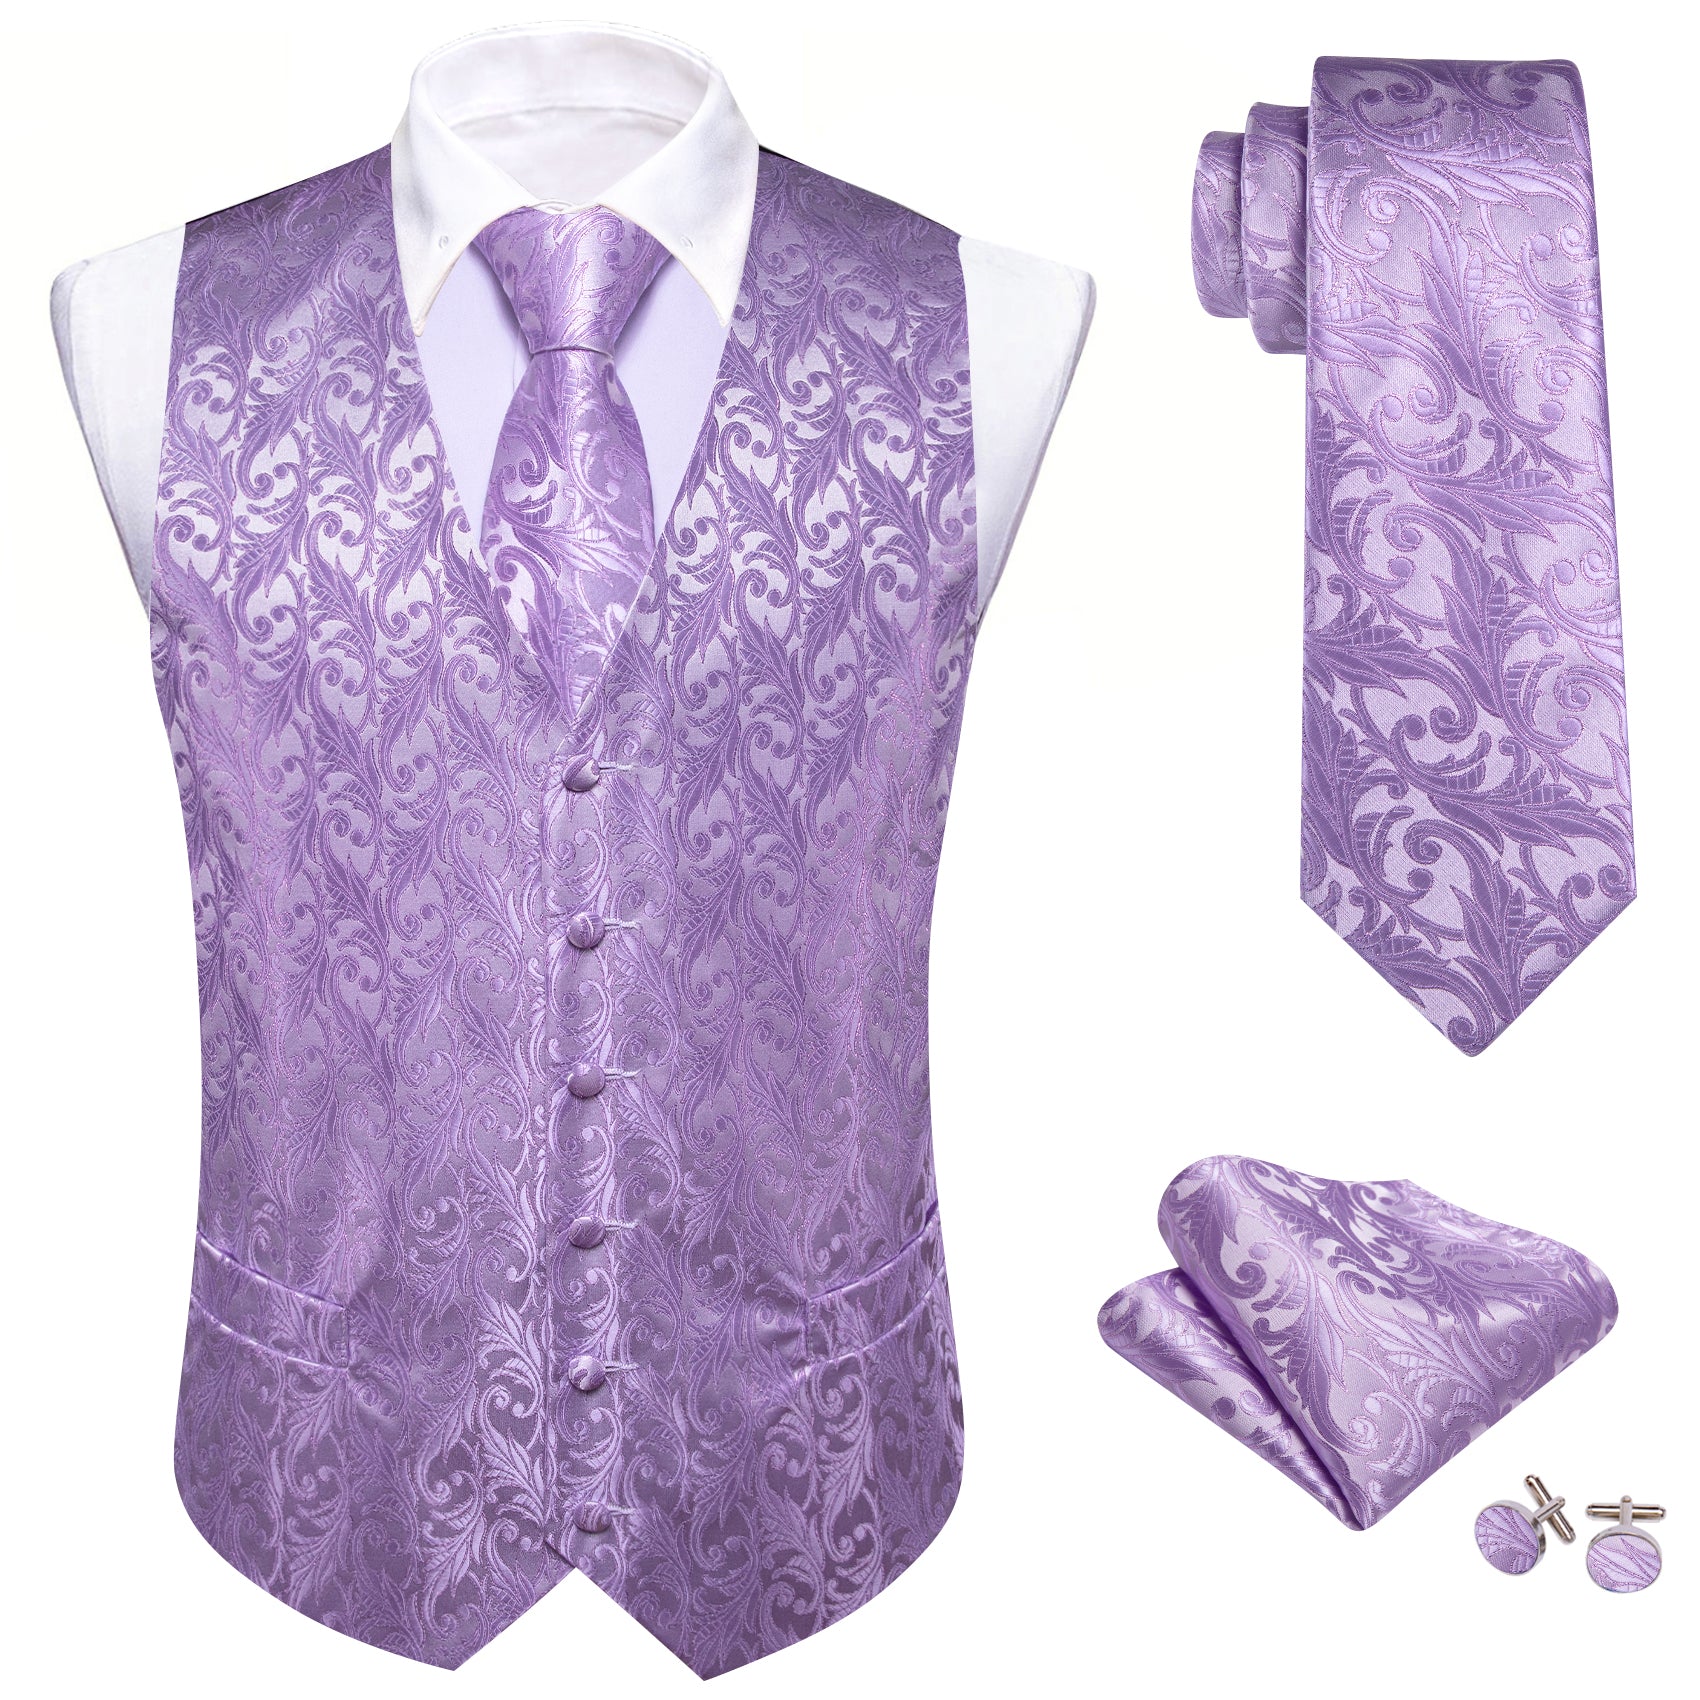 royal purple vest vests for wedding